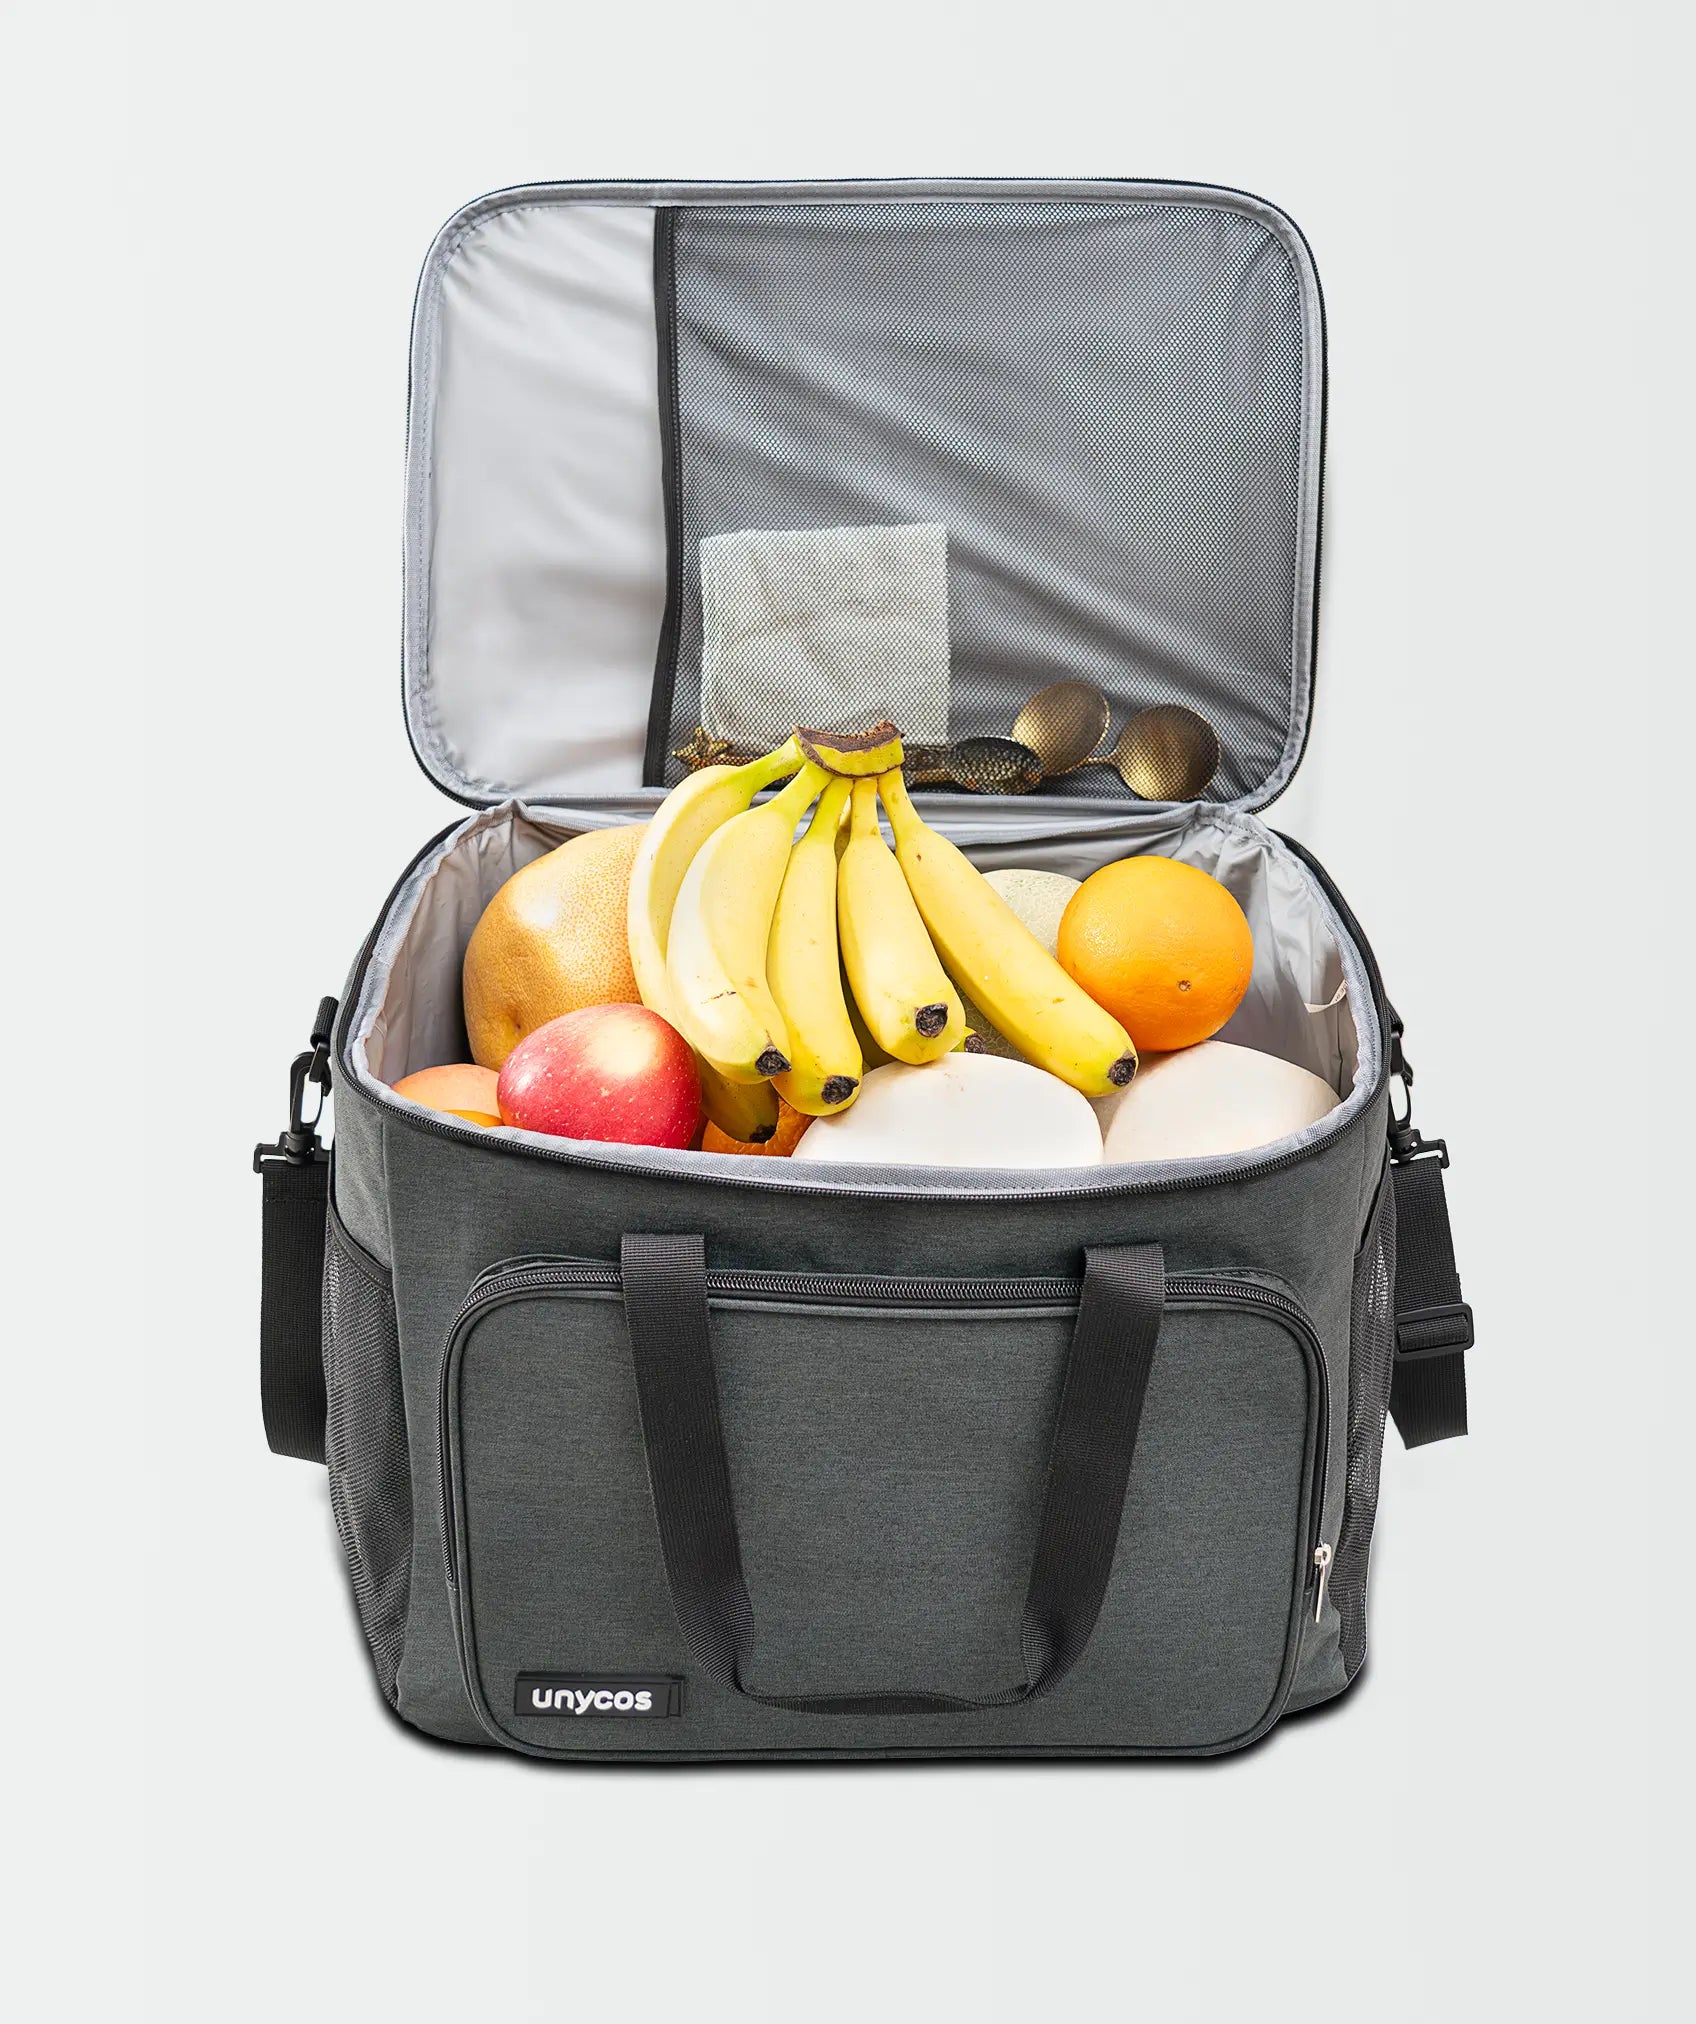 Bolsa térmica porta alimentos de 30L: gran capacidad para almuerzo, oficina o viaje